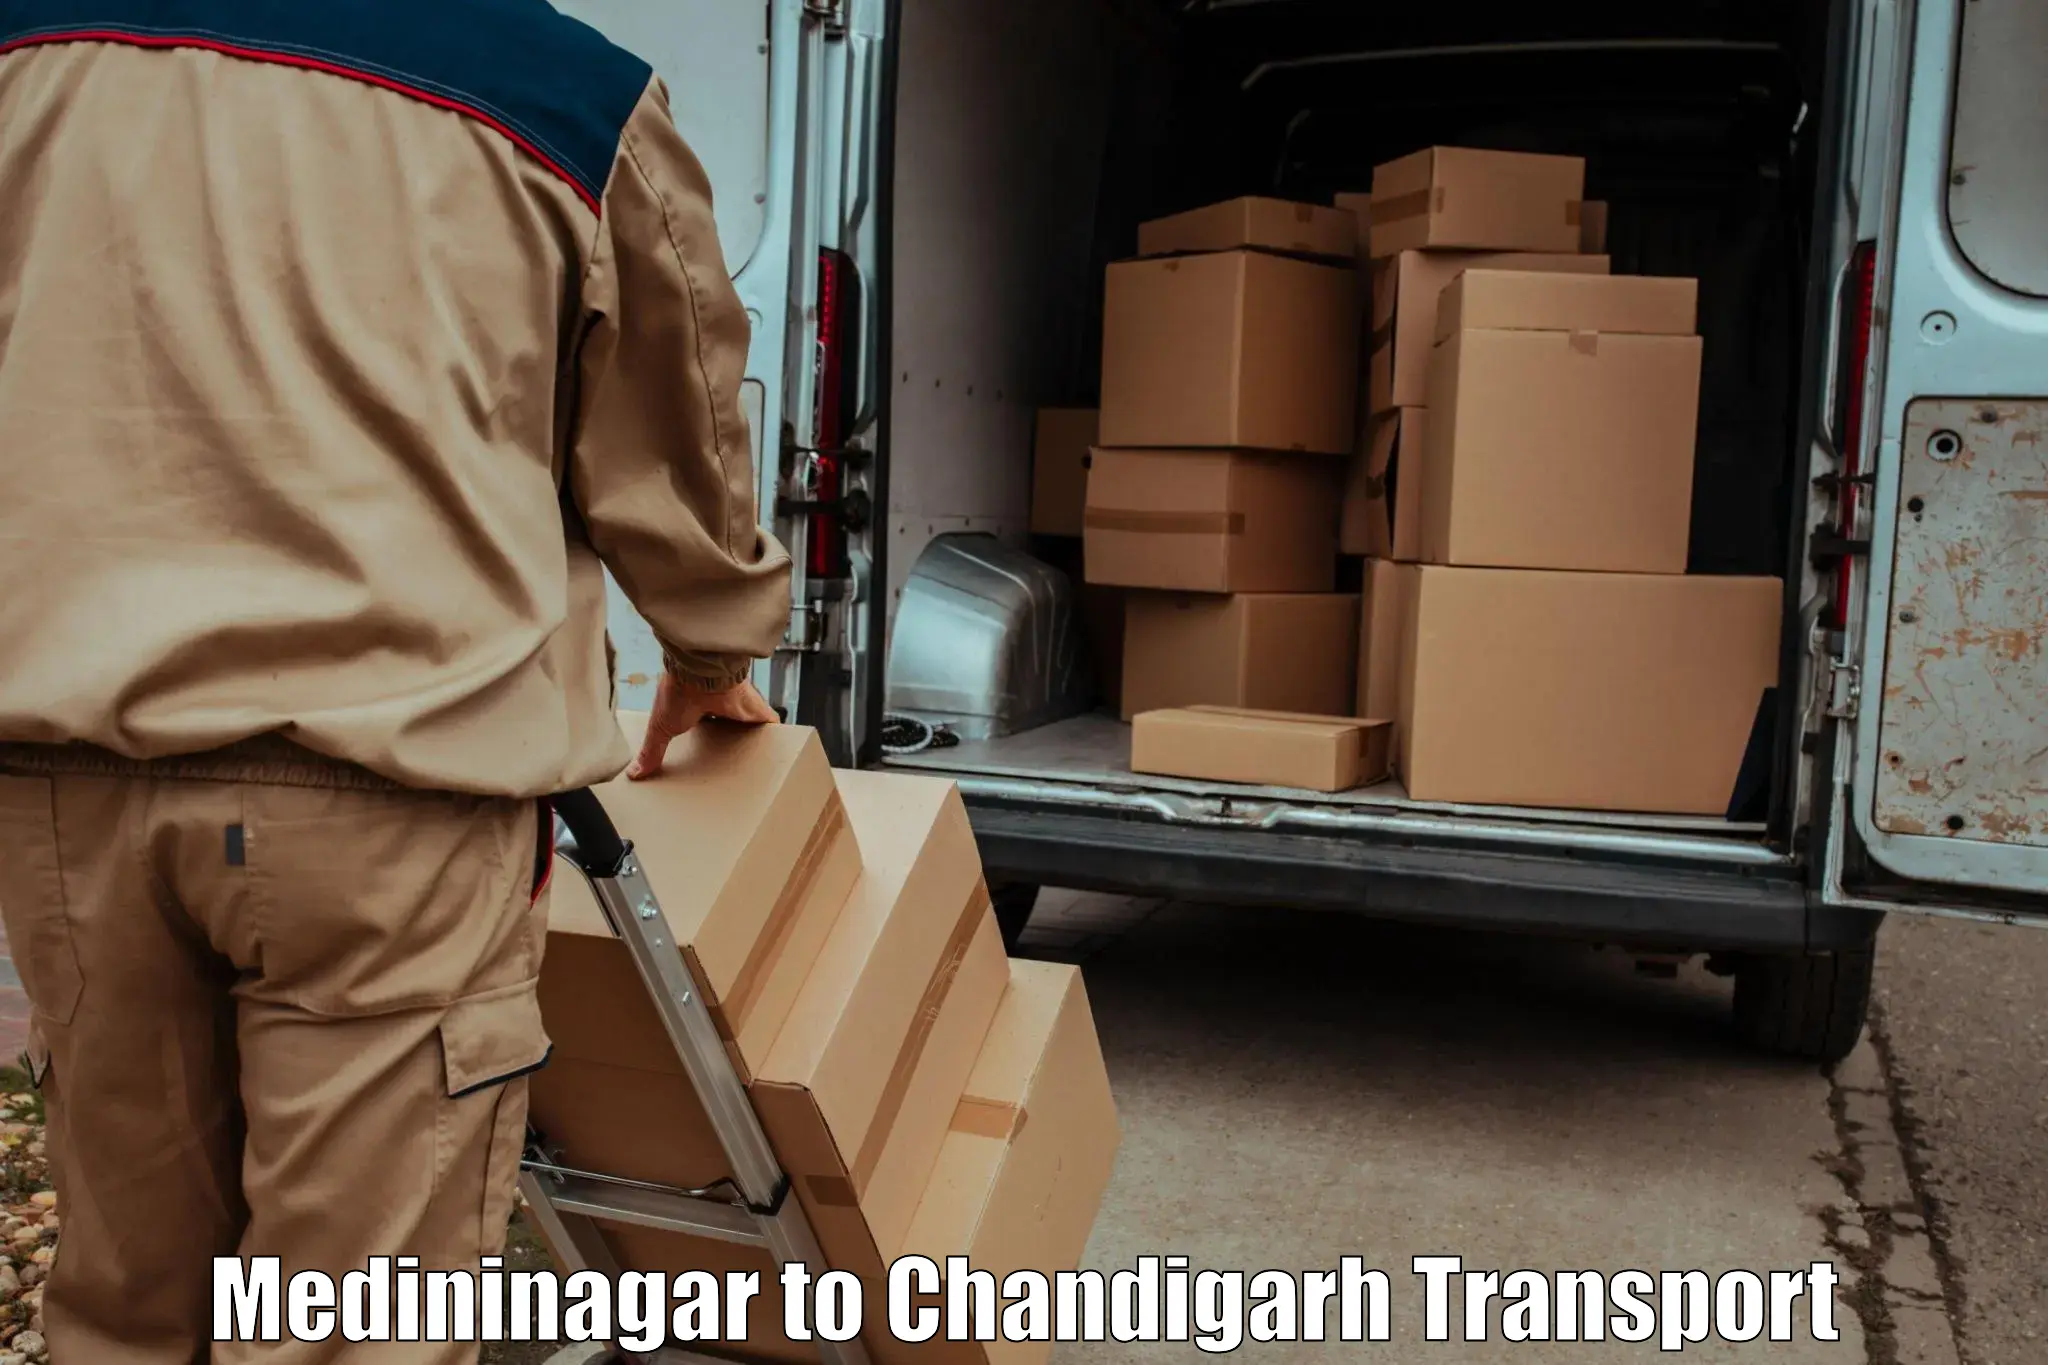 Express transport services Medininagar to Chandigarh